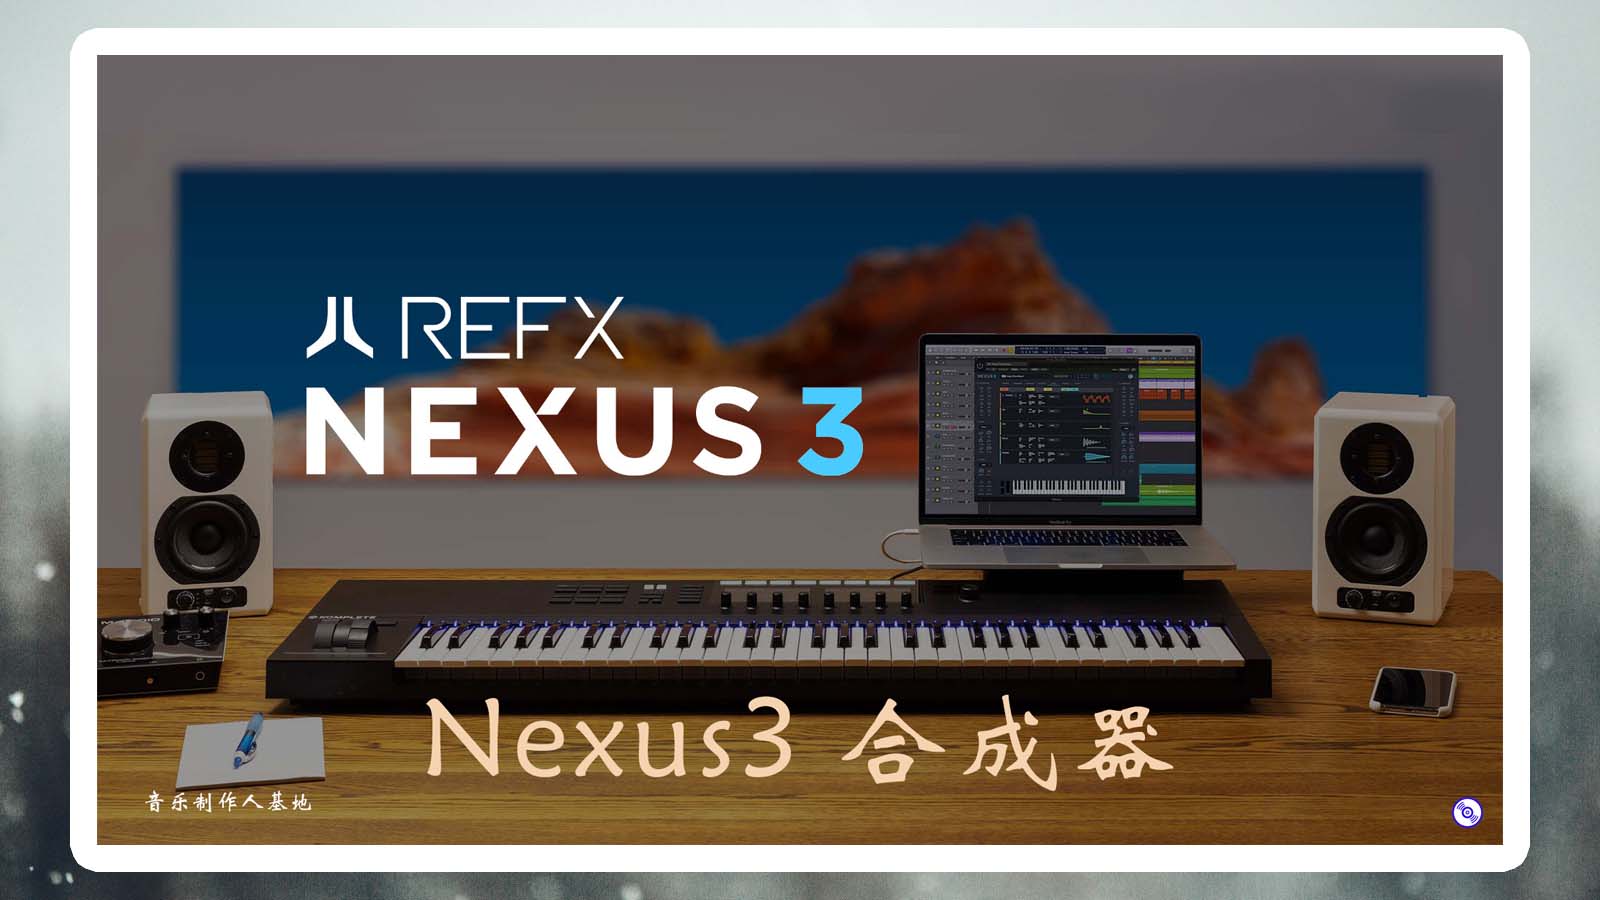 Nexus3合成器完整音色库版 (必备合成器) 音色超多!